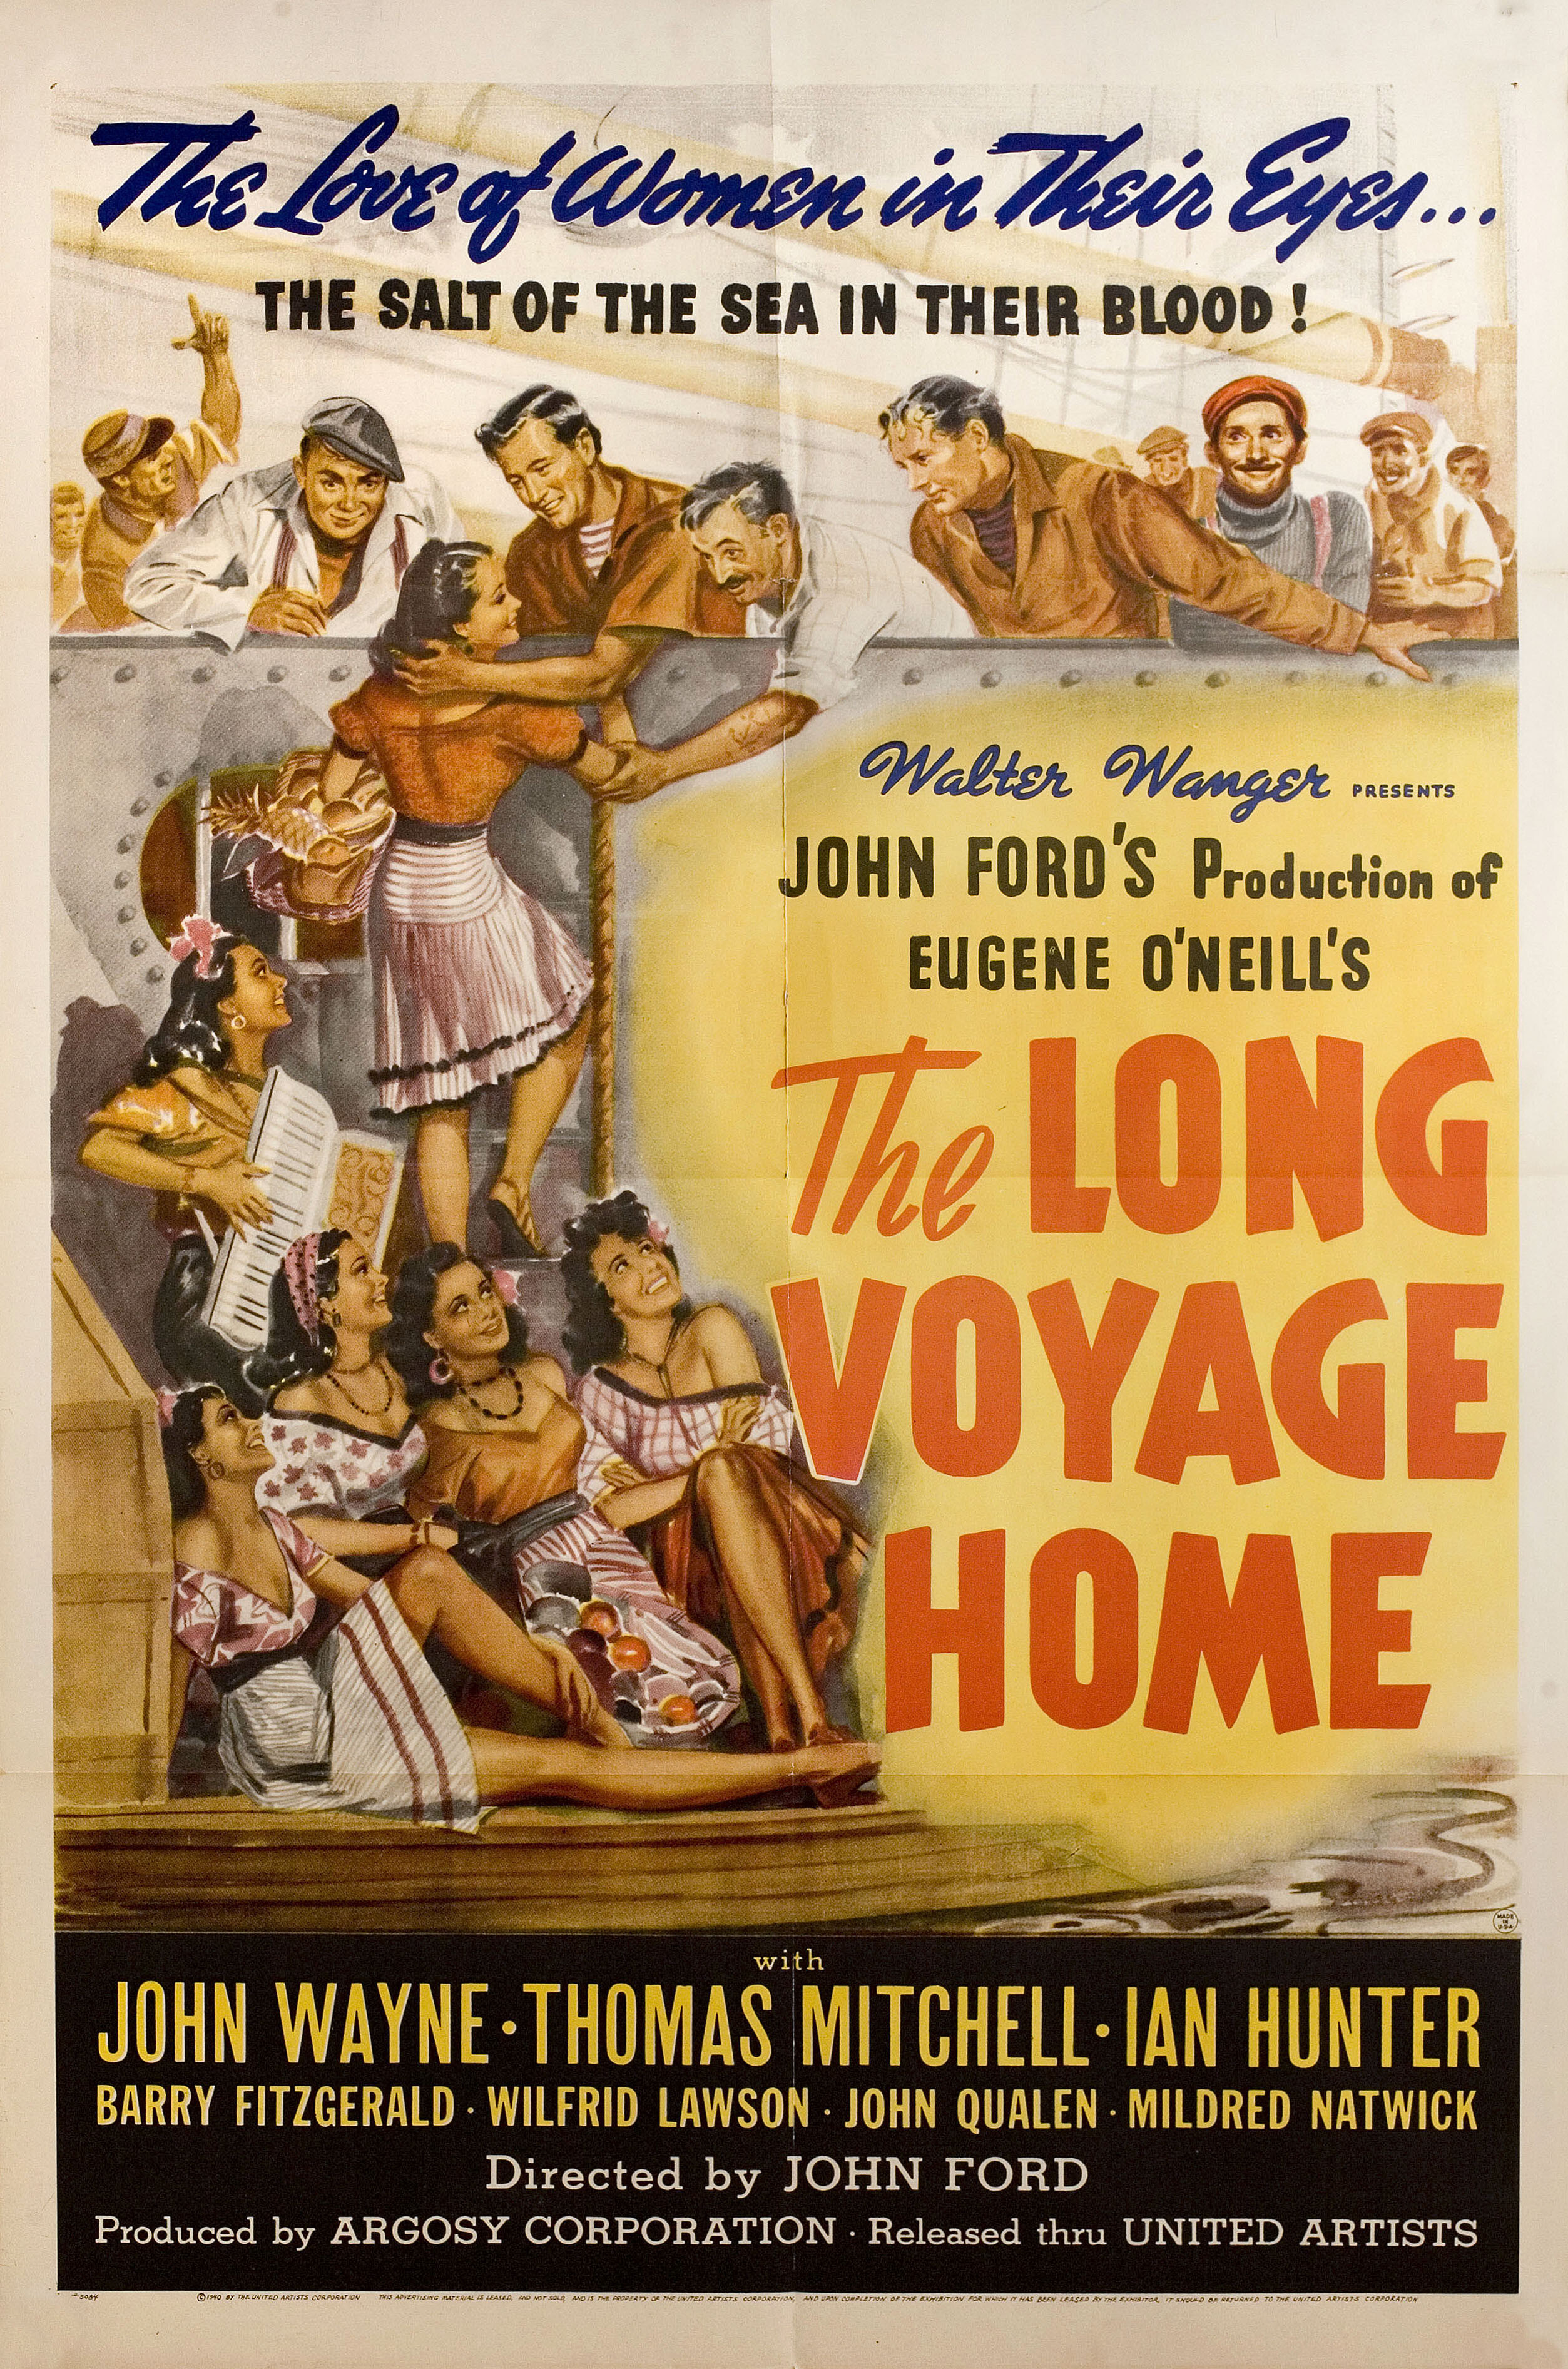 Долгий путь домой (The Long Voyage Home, 1940), режиссёр Джон Форд, художественный постер к фильму (США, 1940 год)